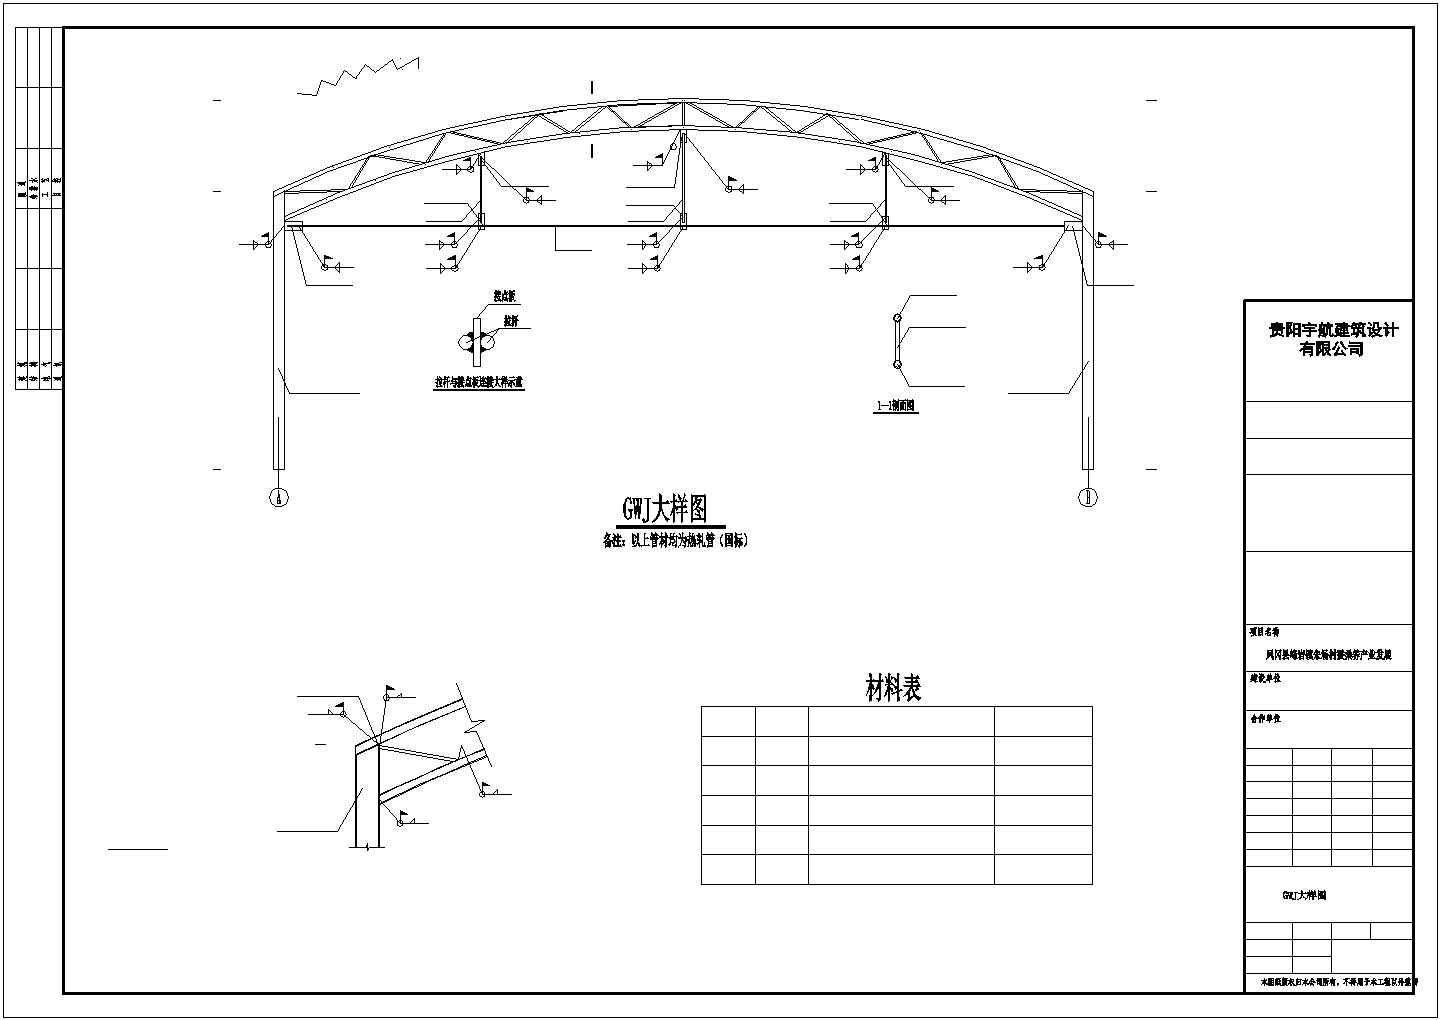 【最新】某地区某养蚕房钢结构设计方案CAD图纸